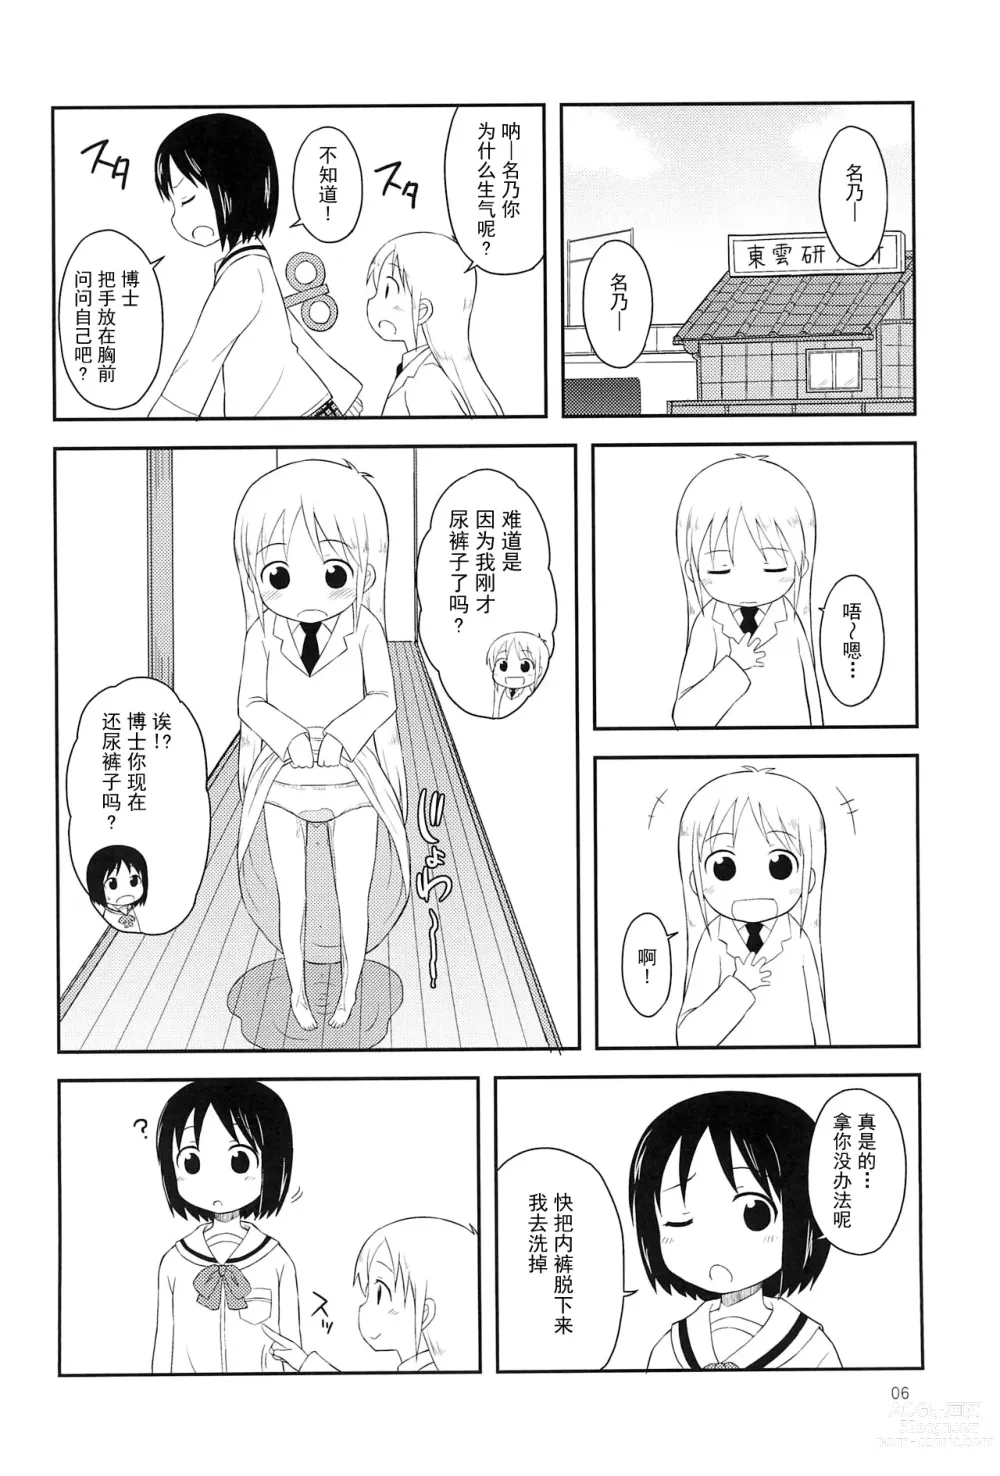 Page 6 of doujinshi Youta Tanpenshuu Yoru no Uta